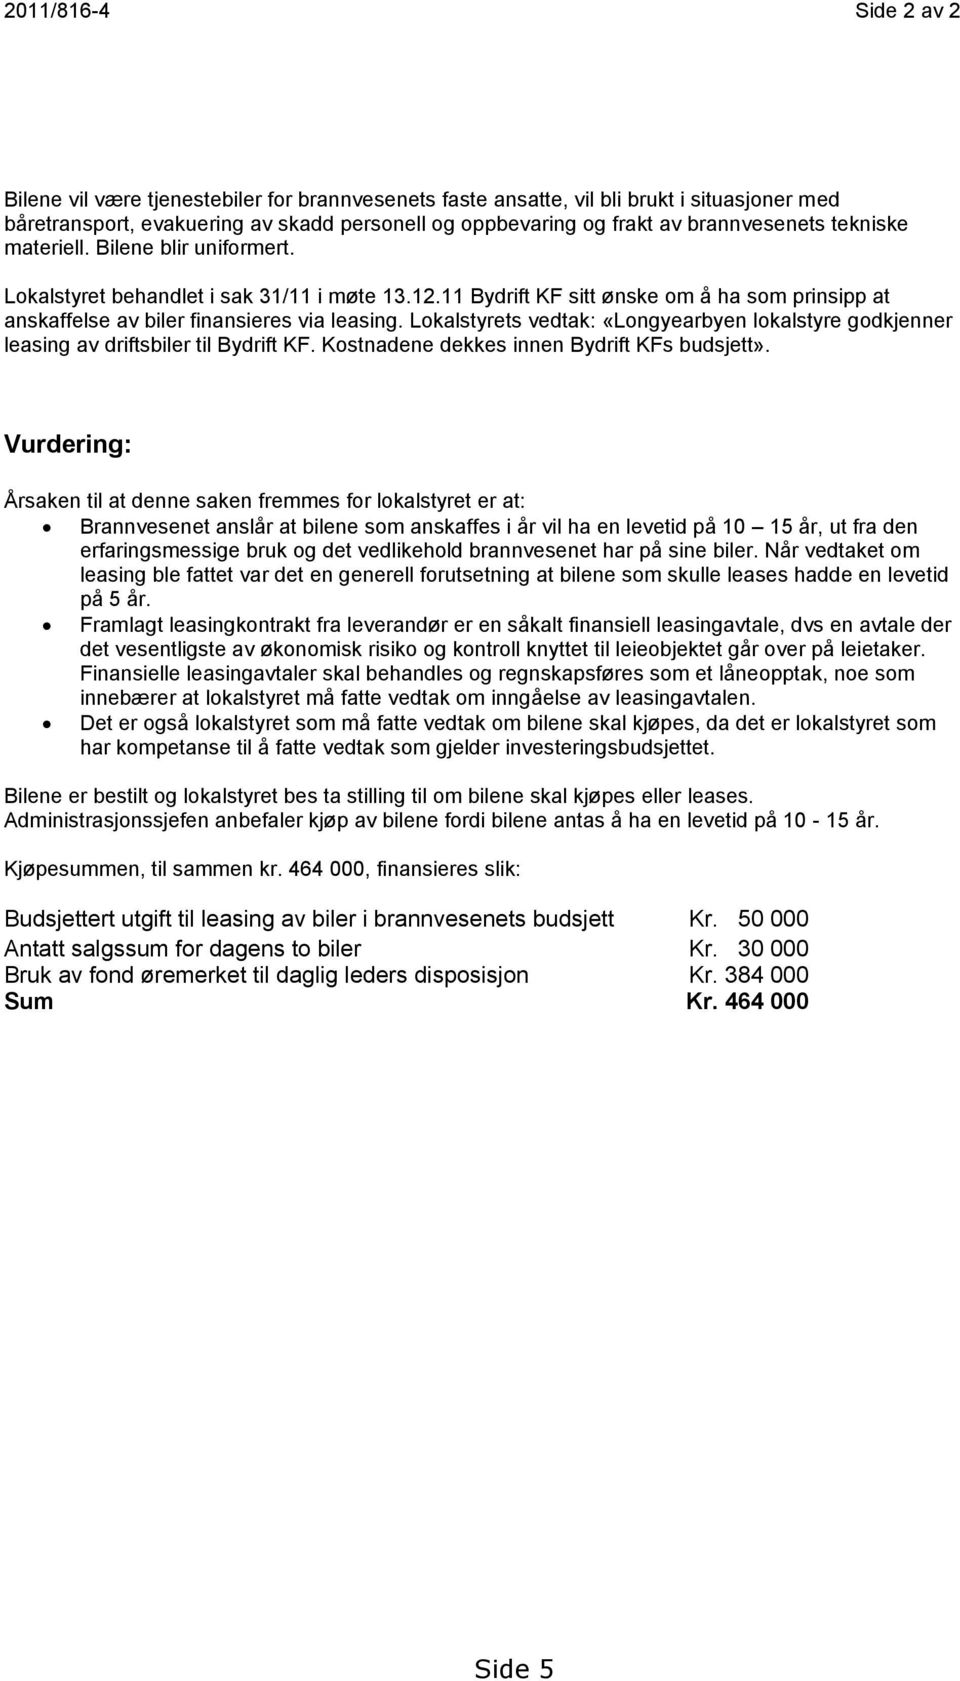 Lokalstyrets vedtak: «Longyearbyen lokalstyre godkjenner leasing av driftsbiler til Bydrift KF. Kostnadene dekkes innen Bydrift KFs budsjett».